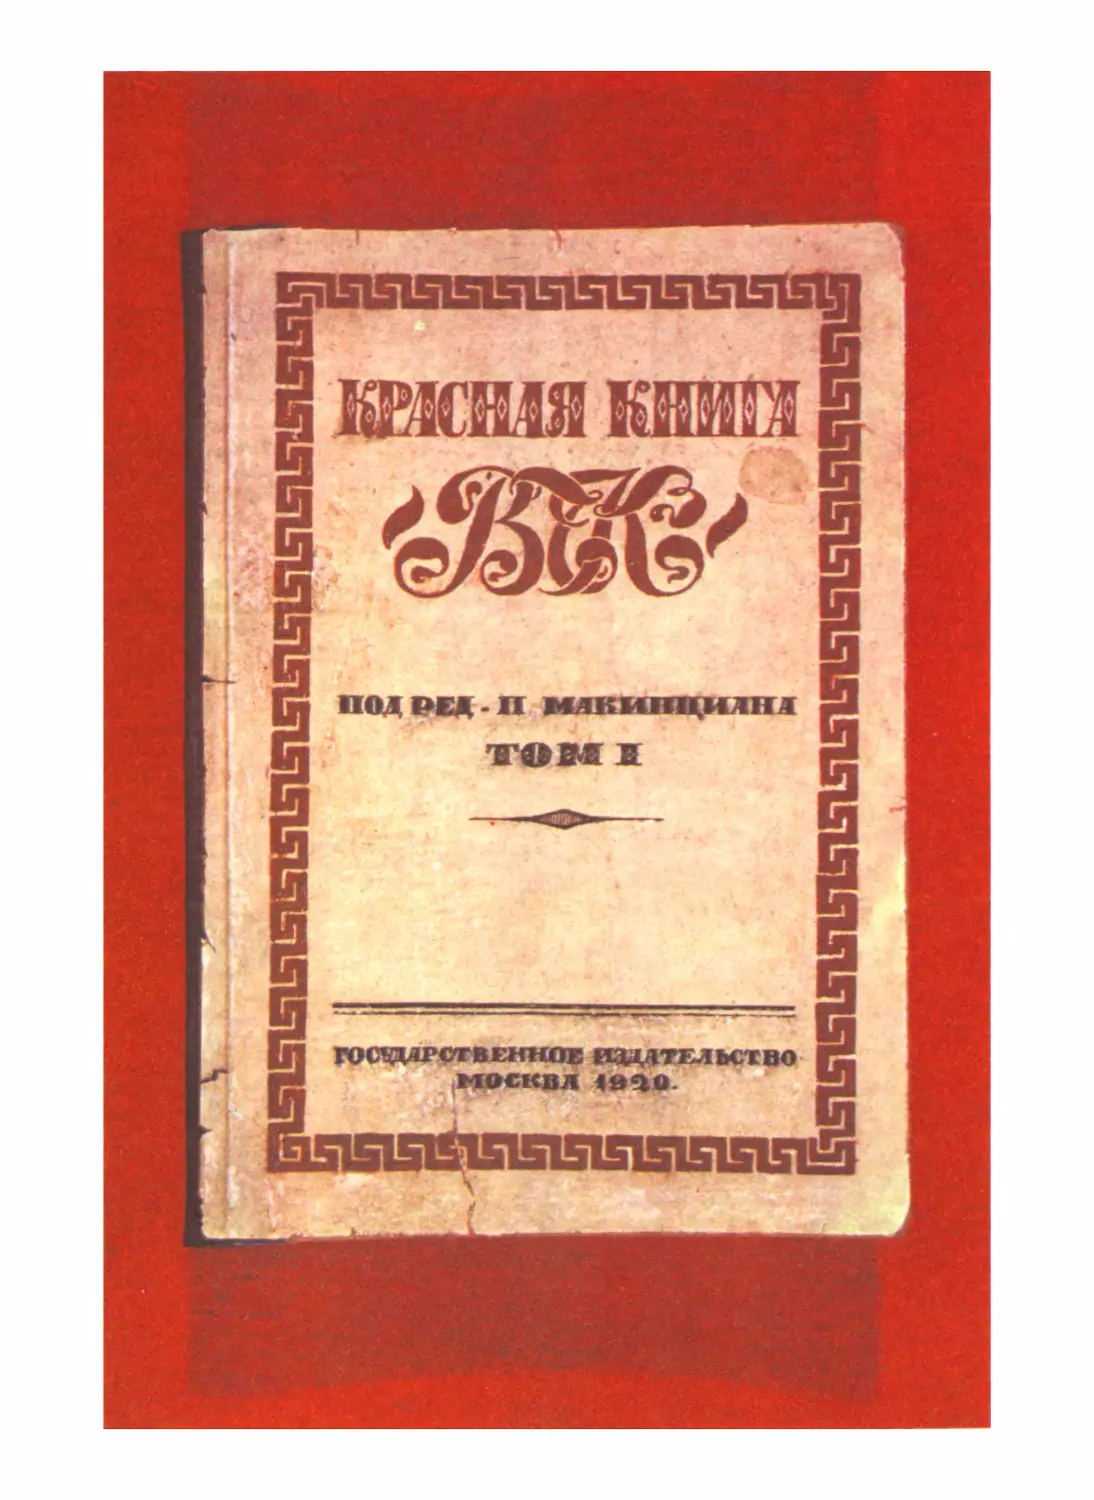 Обложка издания 1920 г.